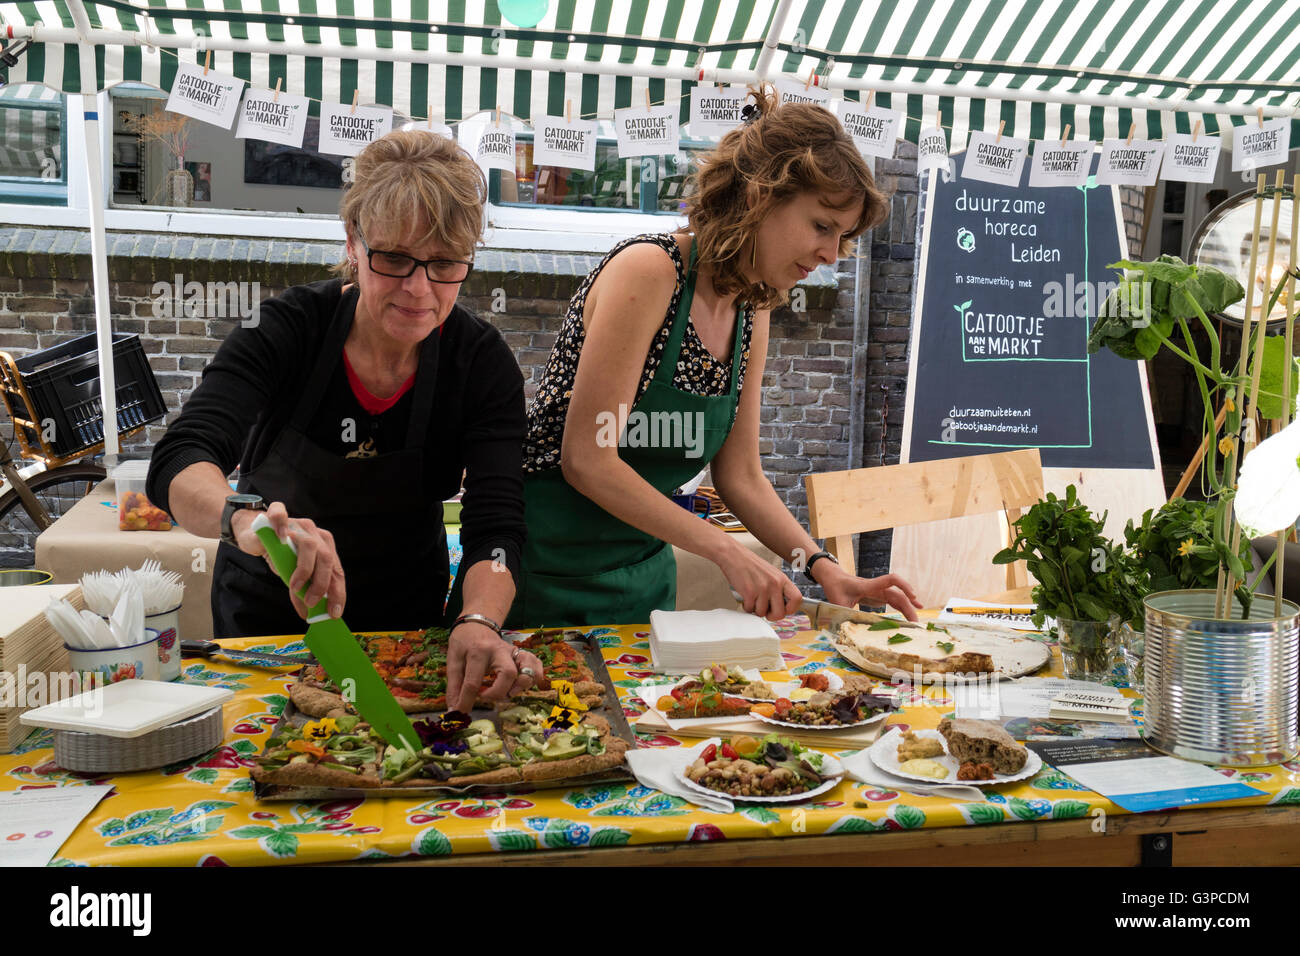 La preparazione di un alimento sano presso il mercato degli alimenti organici in Leiden, Paesi Bassi Foto Stock